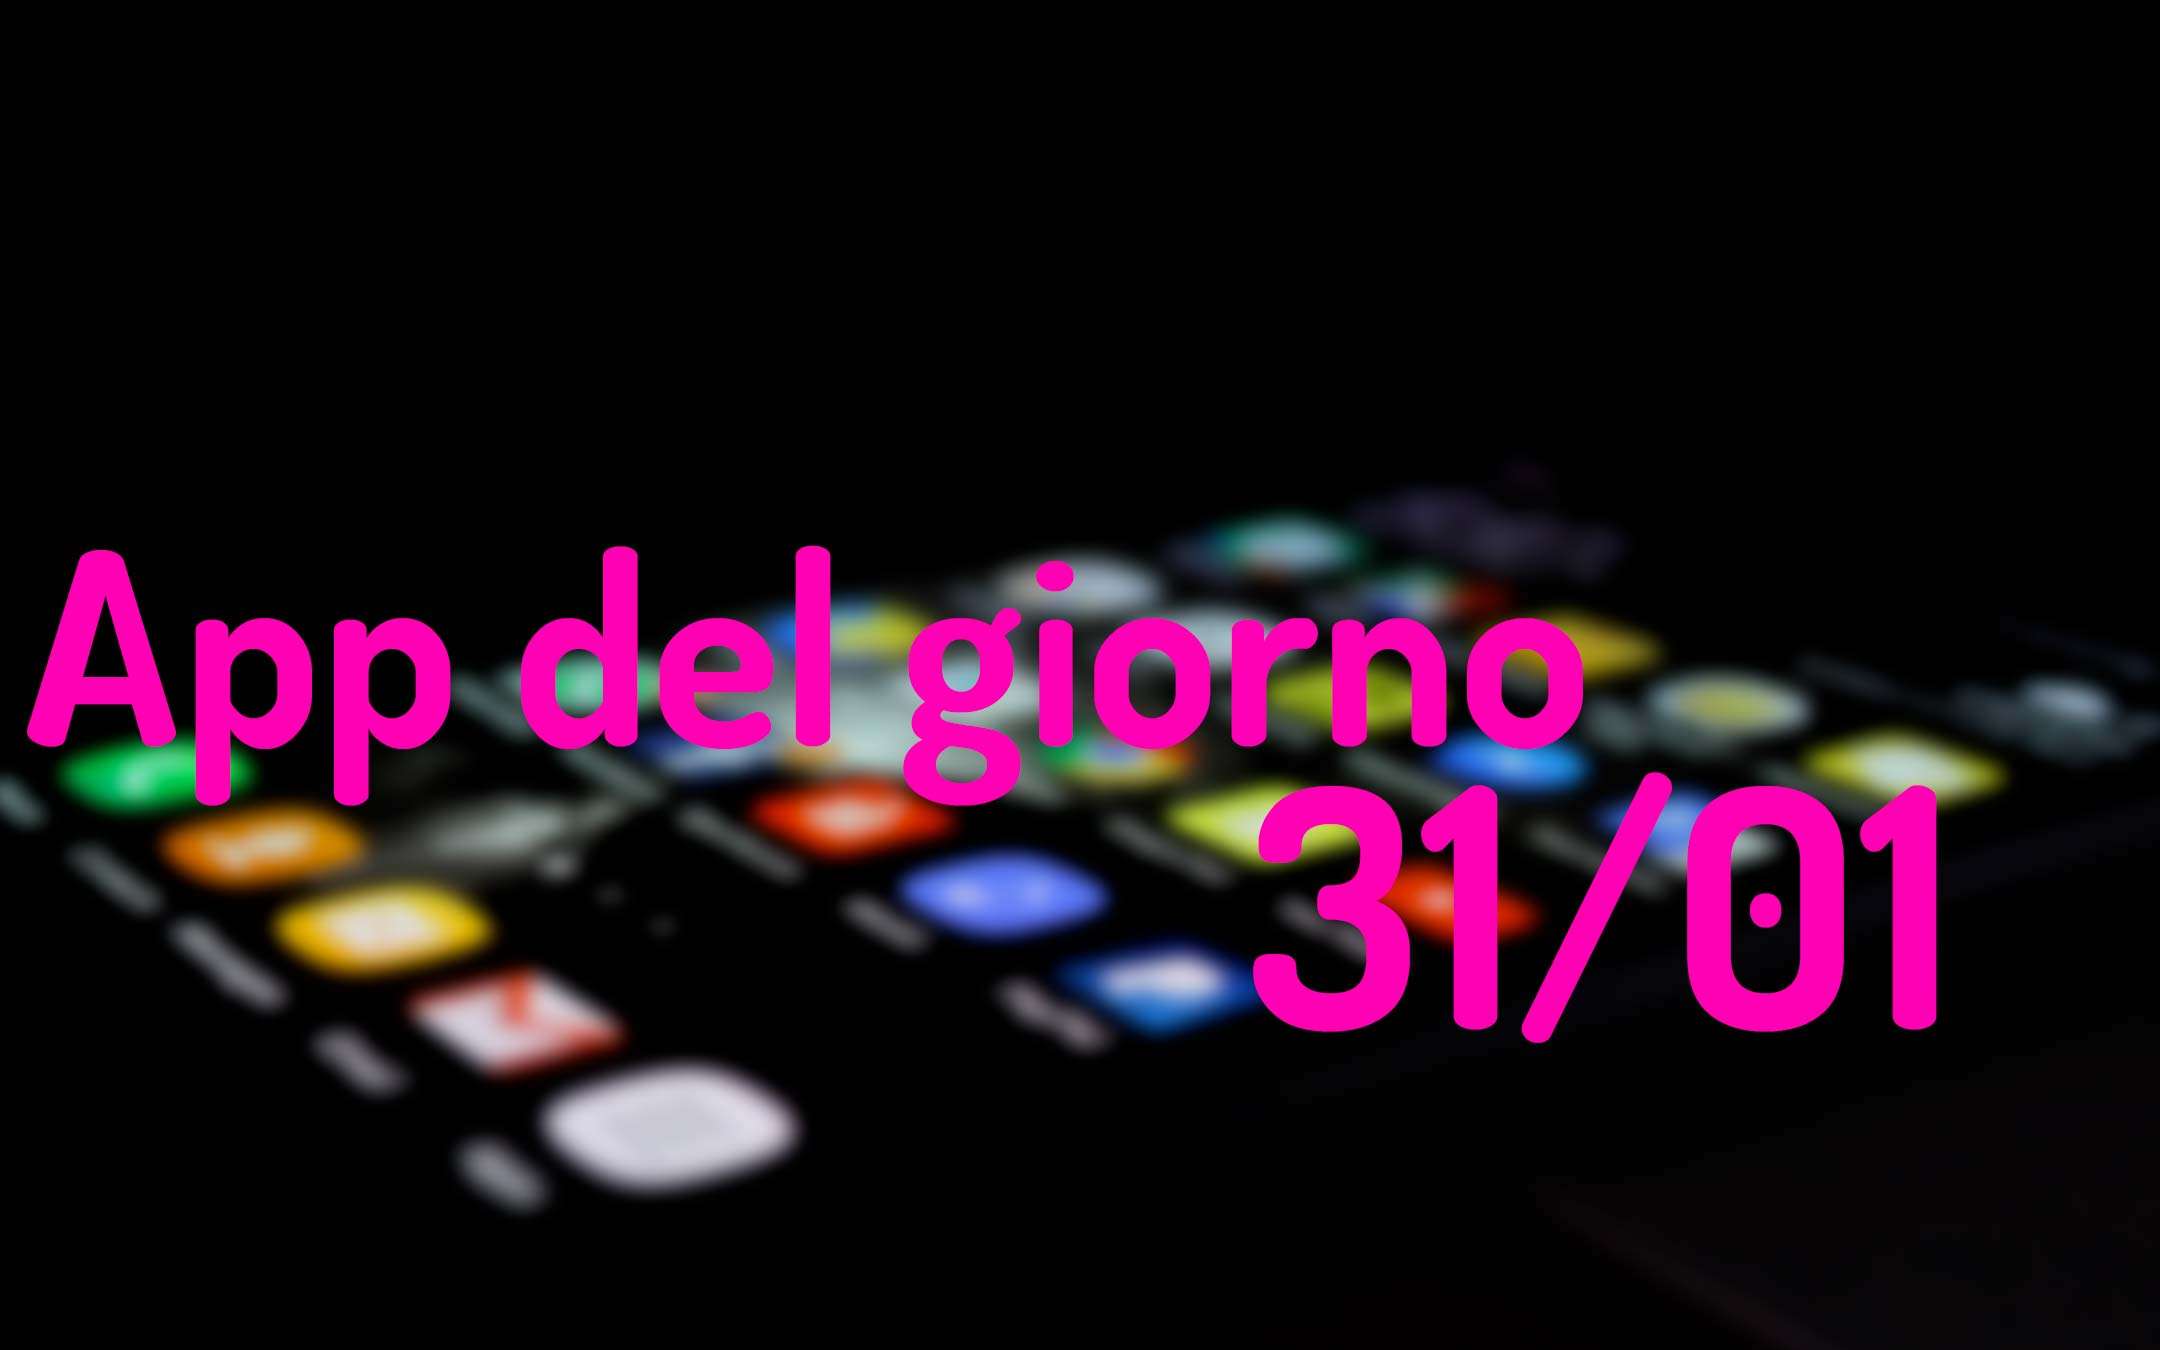 L'app gratis del giorno per Android e iOS (31/01)